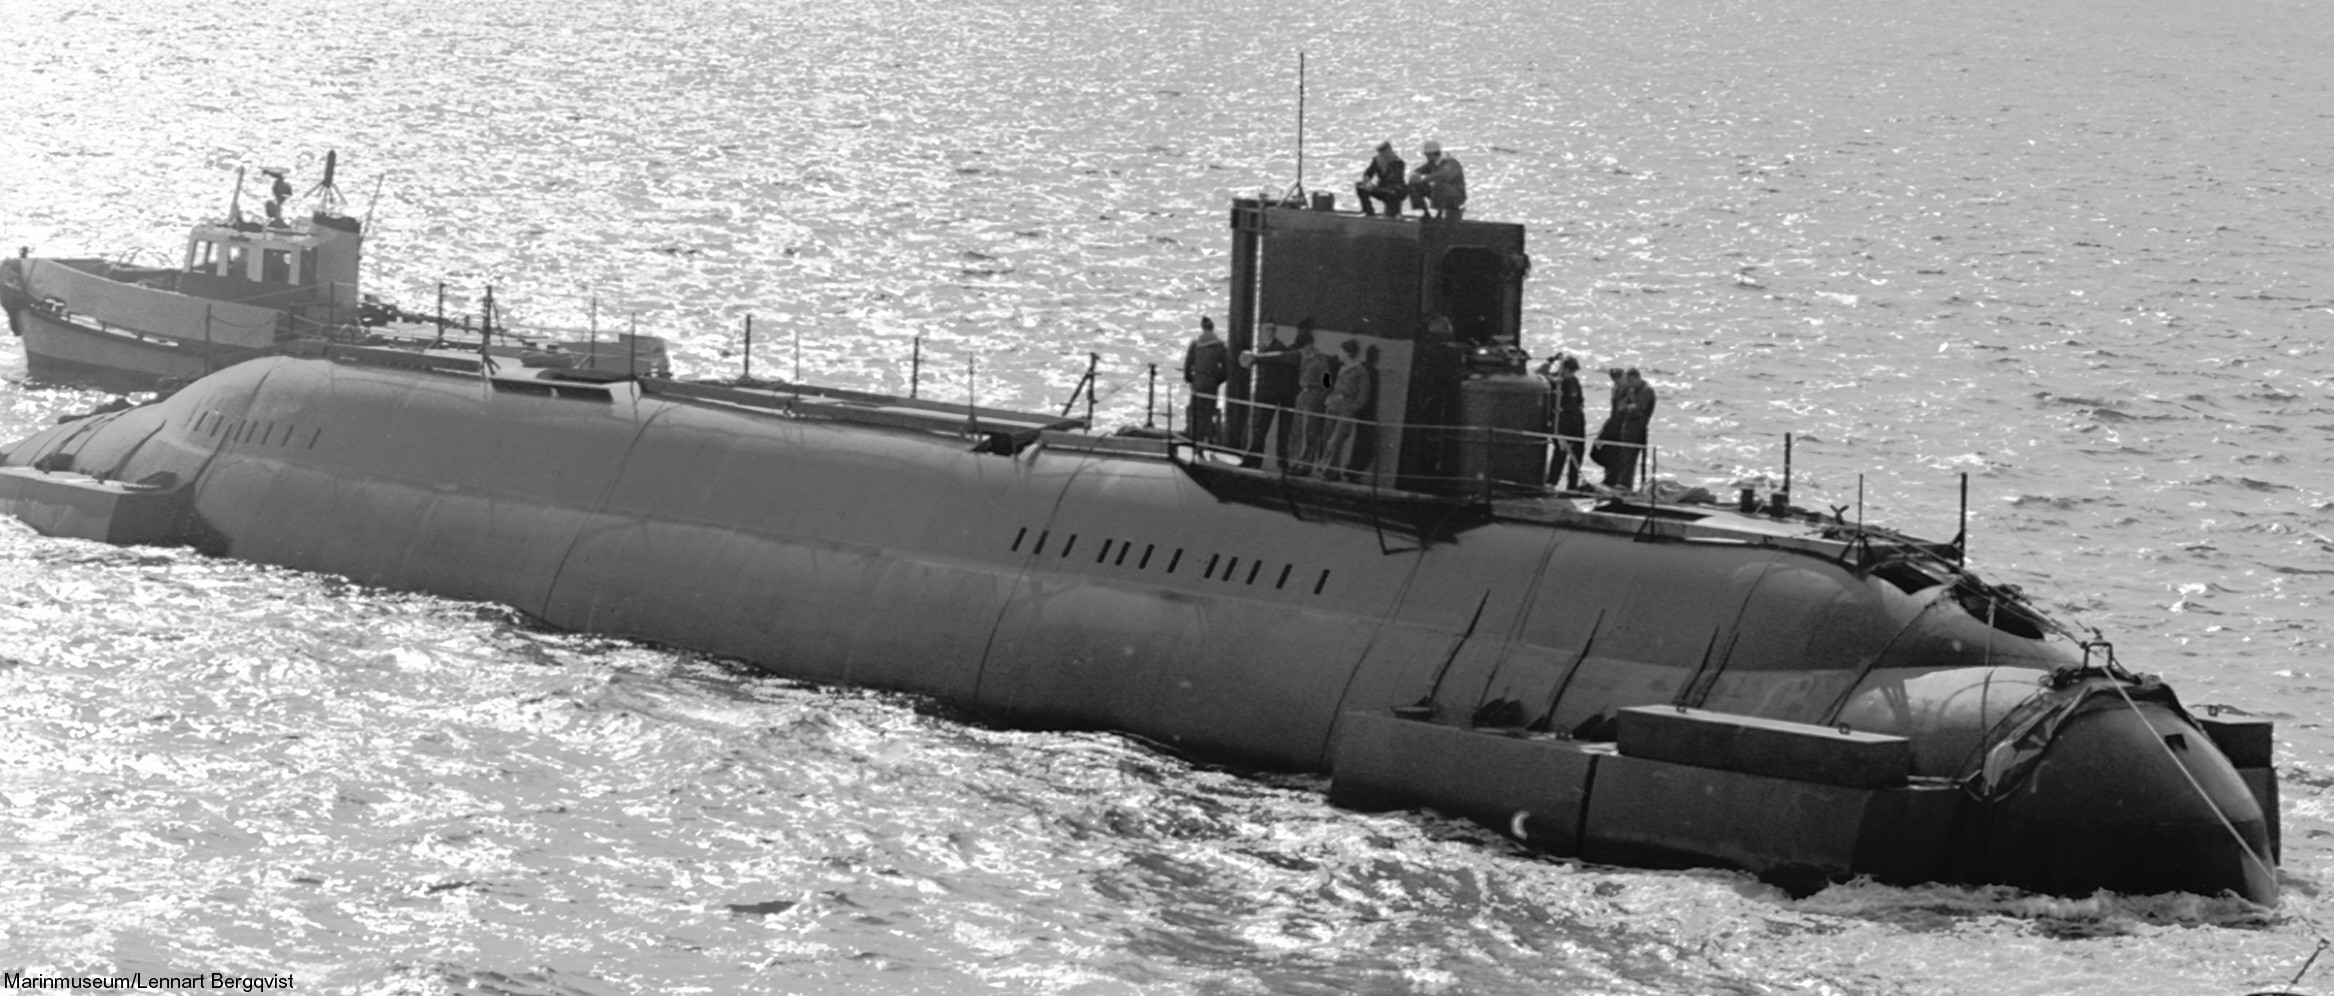 hswms hms sjöhästen shä sjöormen a11 class submarine ssk swedish navy svenska marinen försvarsmakten 13